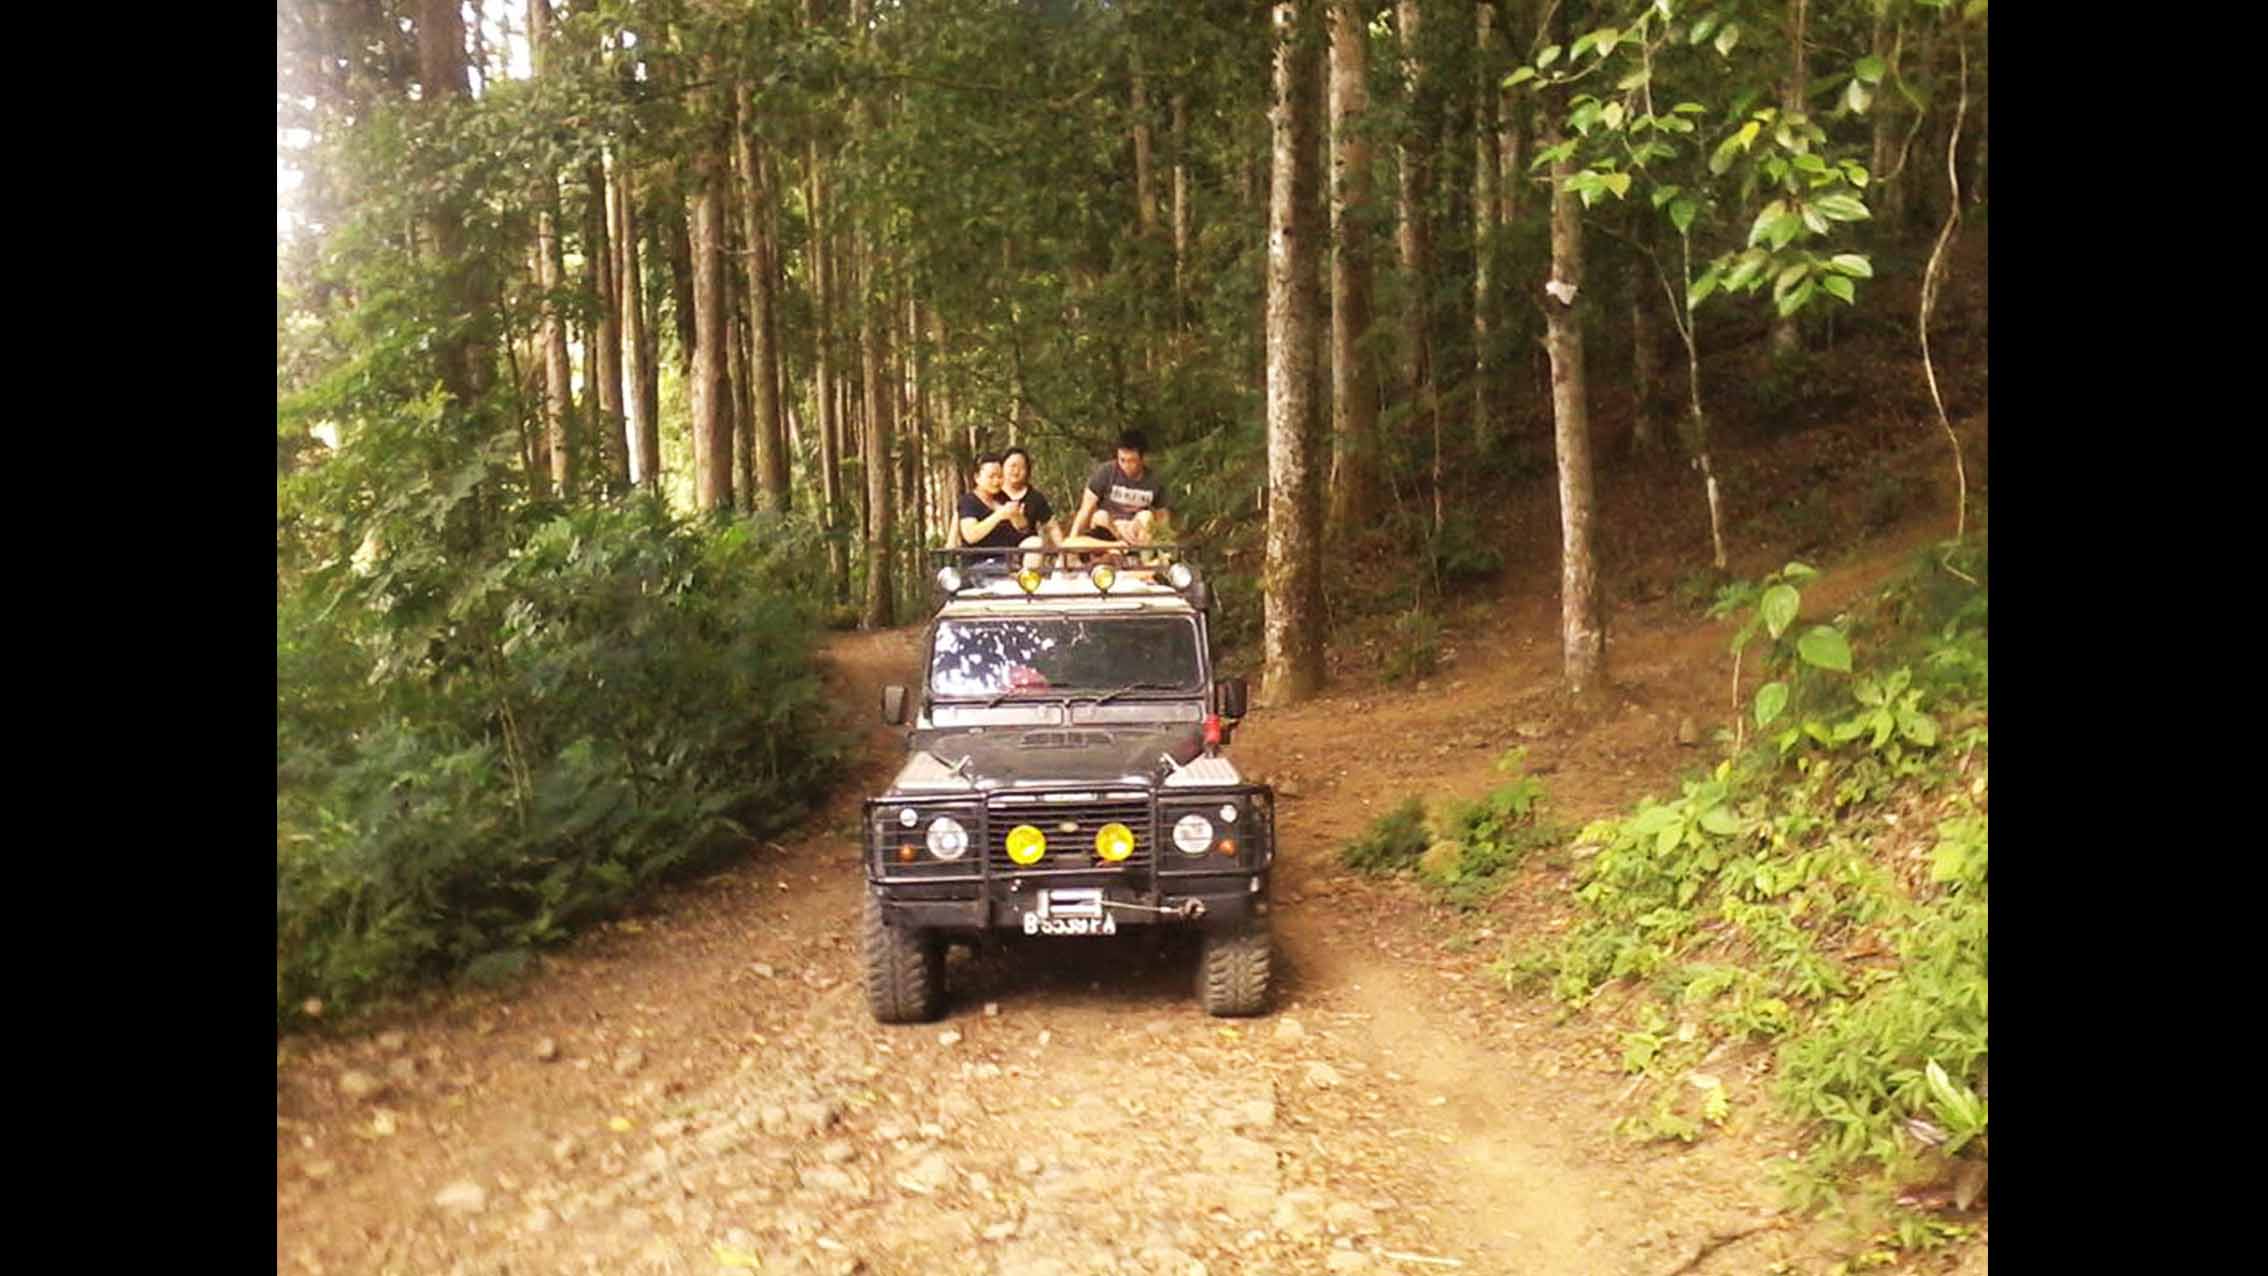 Bali Jeep tours